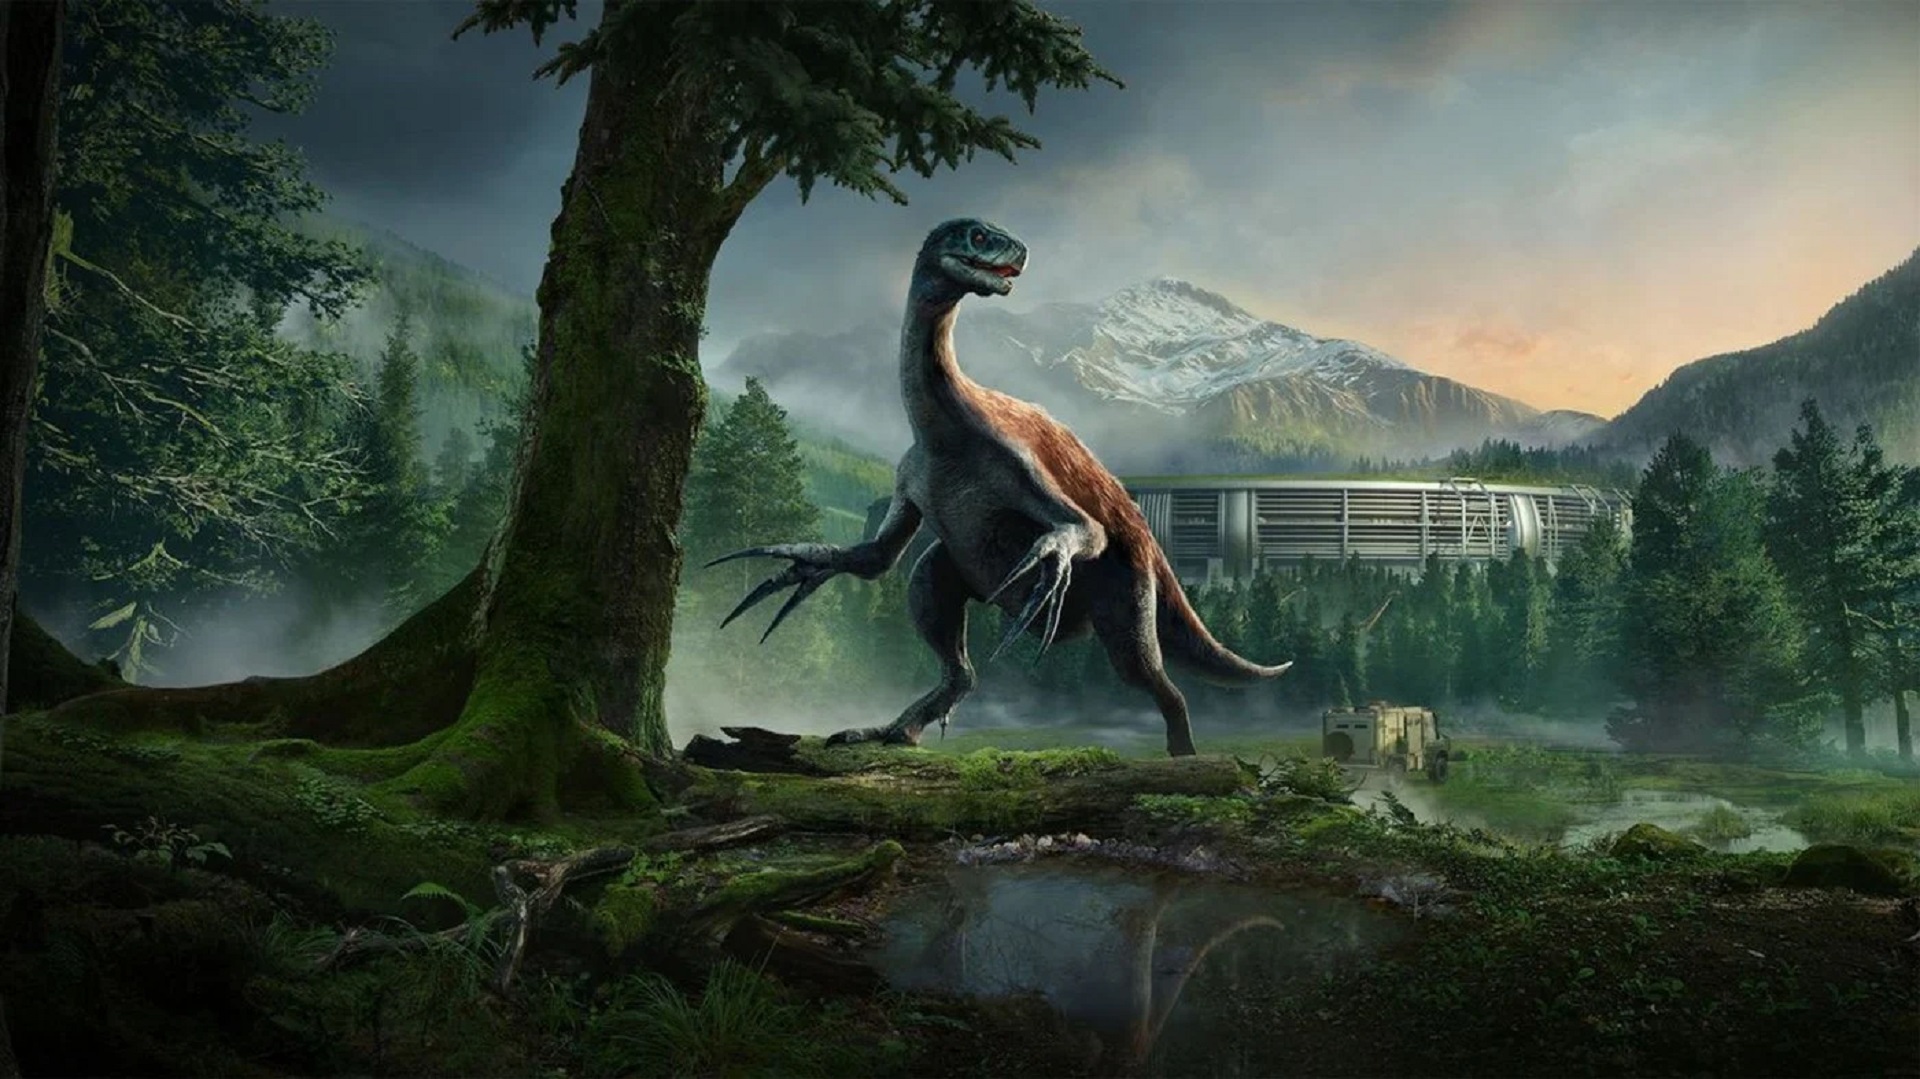 Wrażenia z ewolucji Jurassic World 2: Dominion Pyocin Expansion